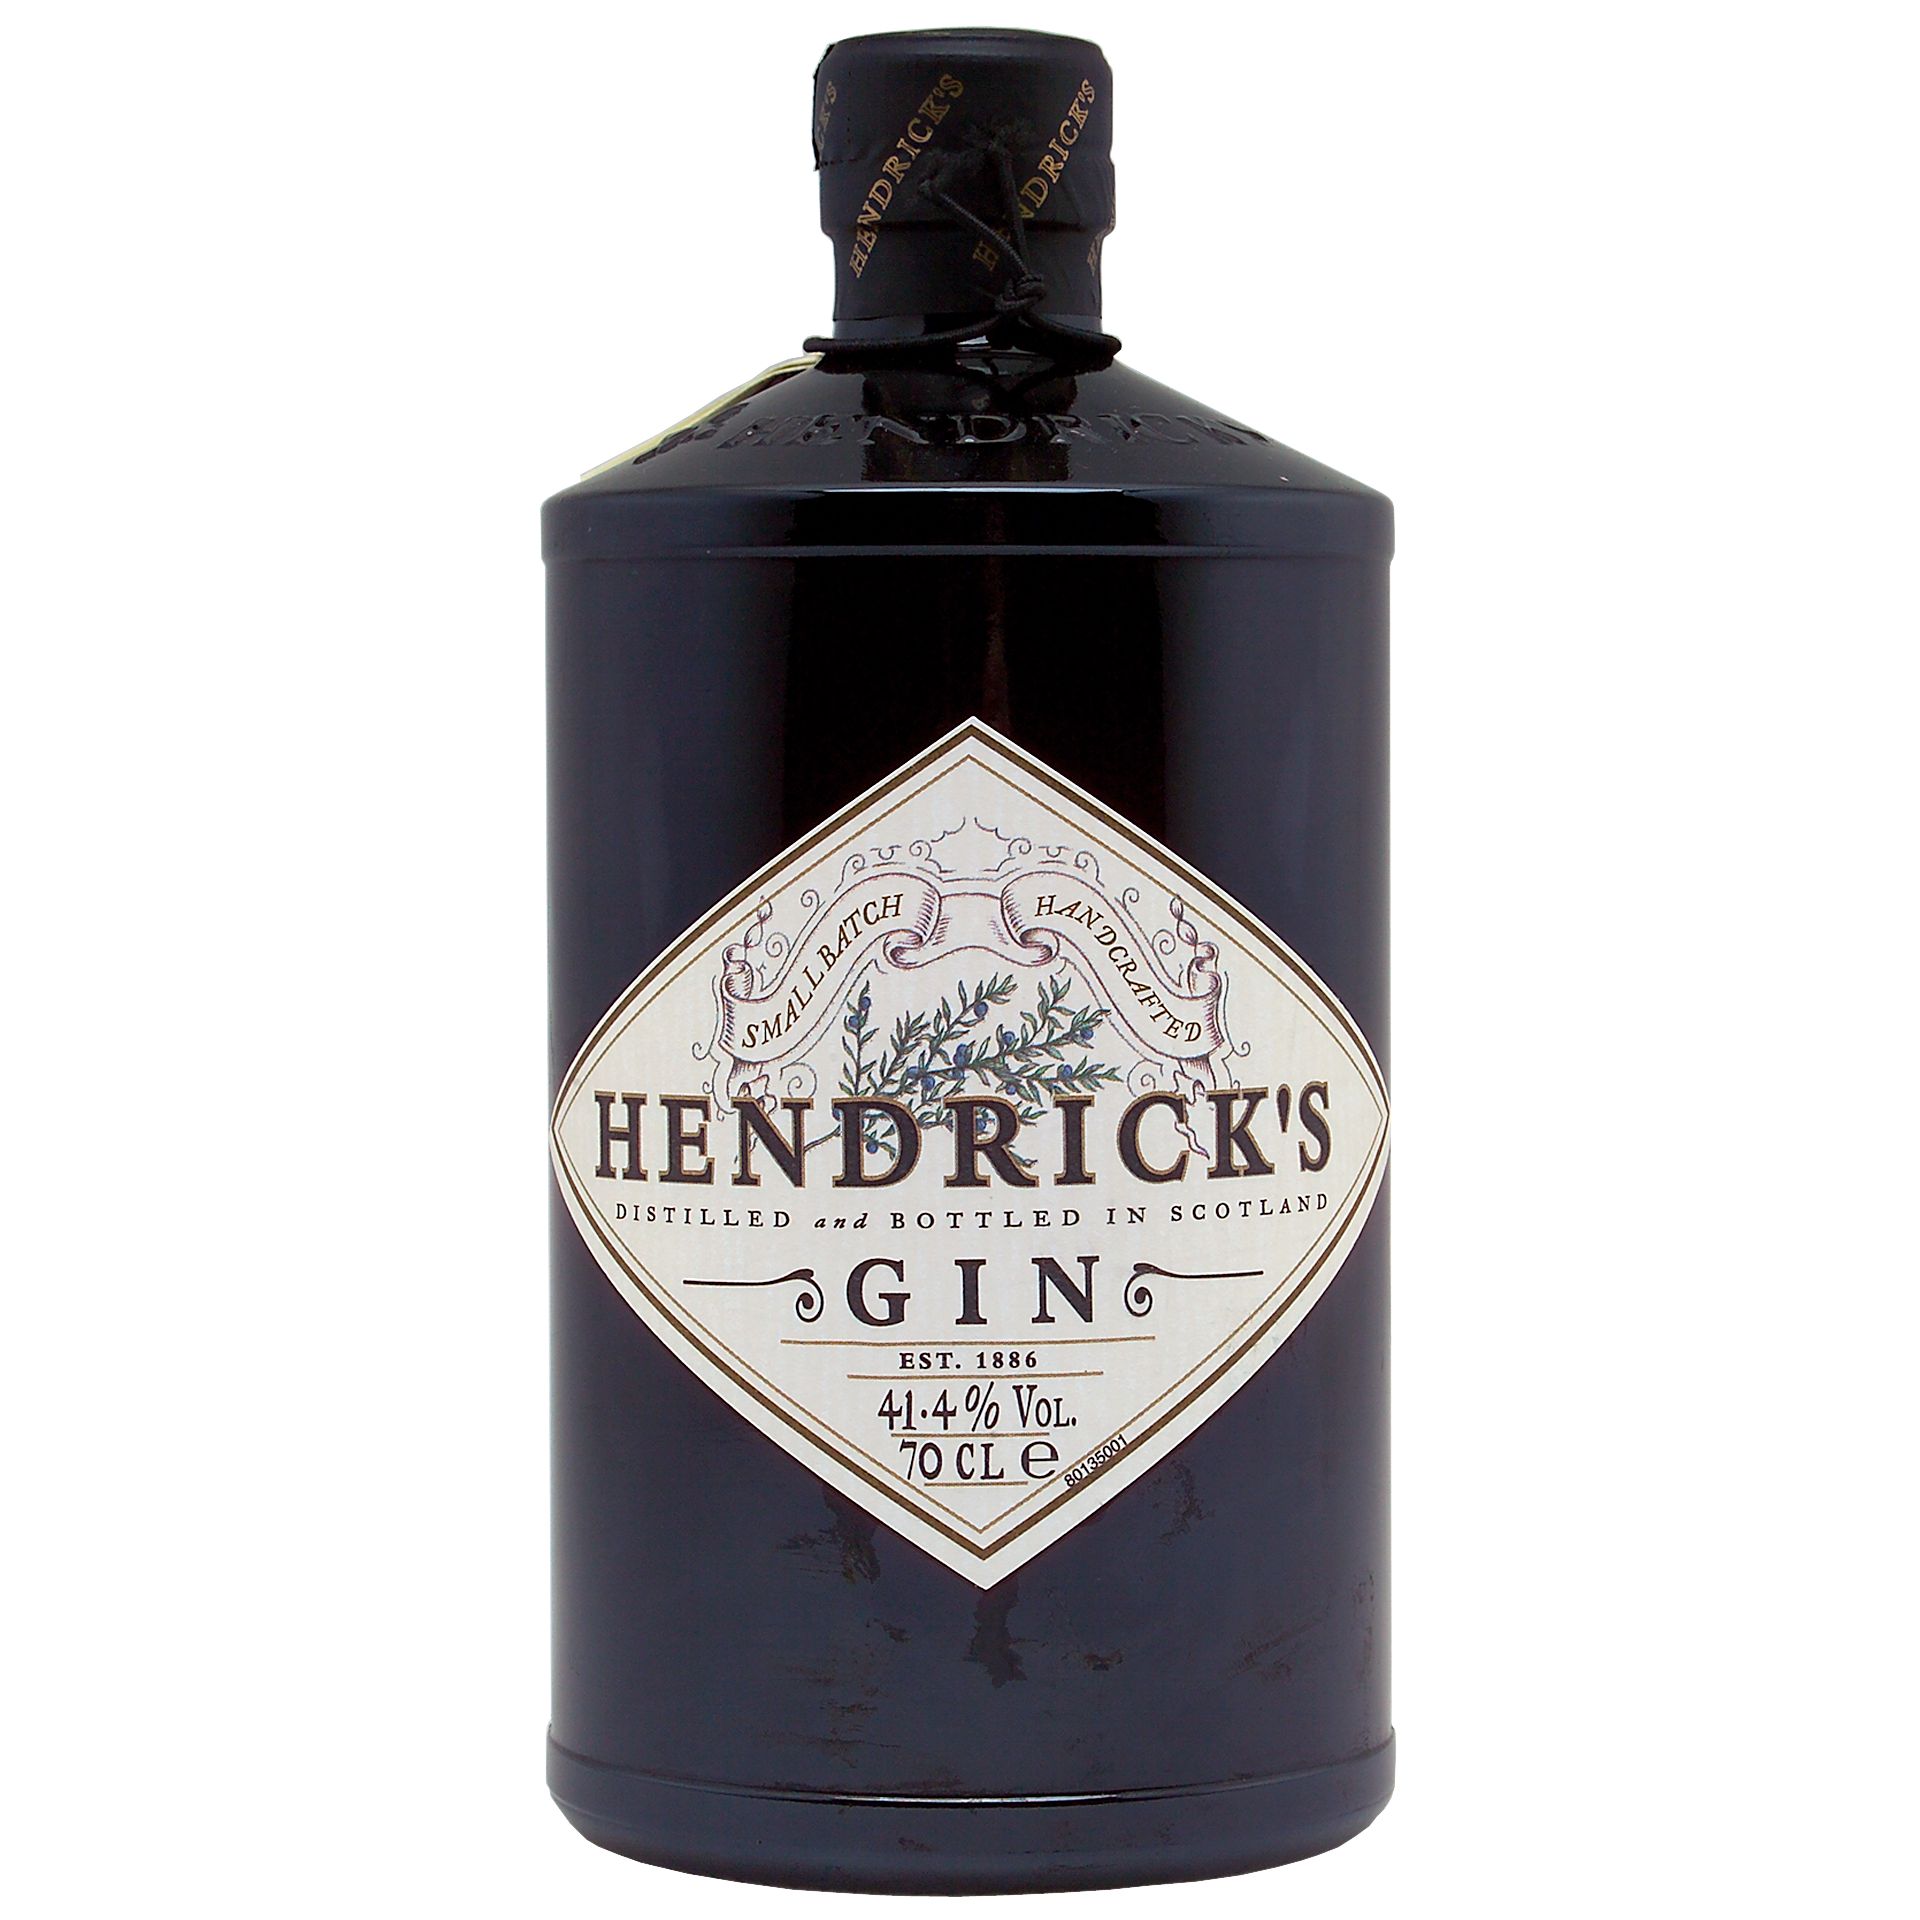 Hendricks Gin at John Lewis